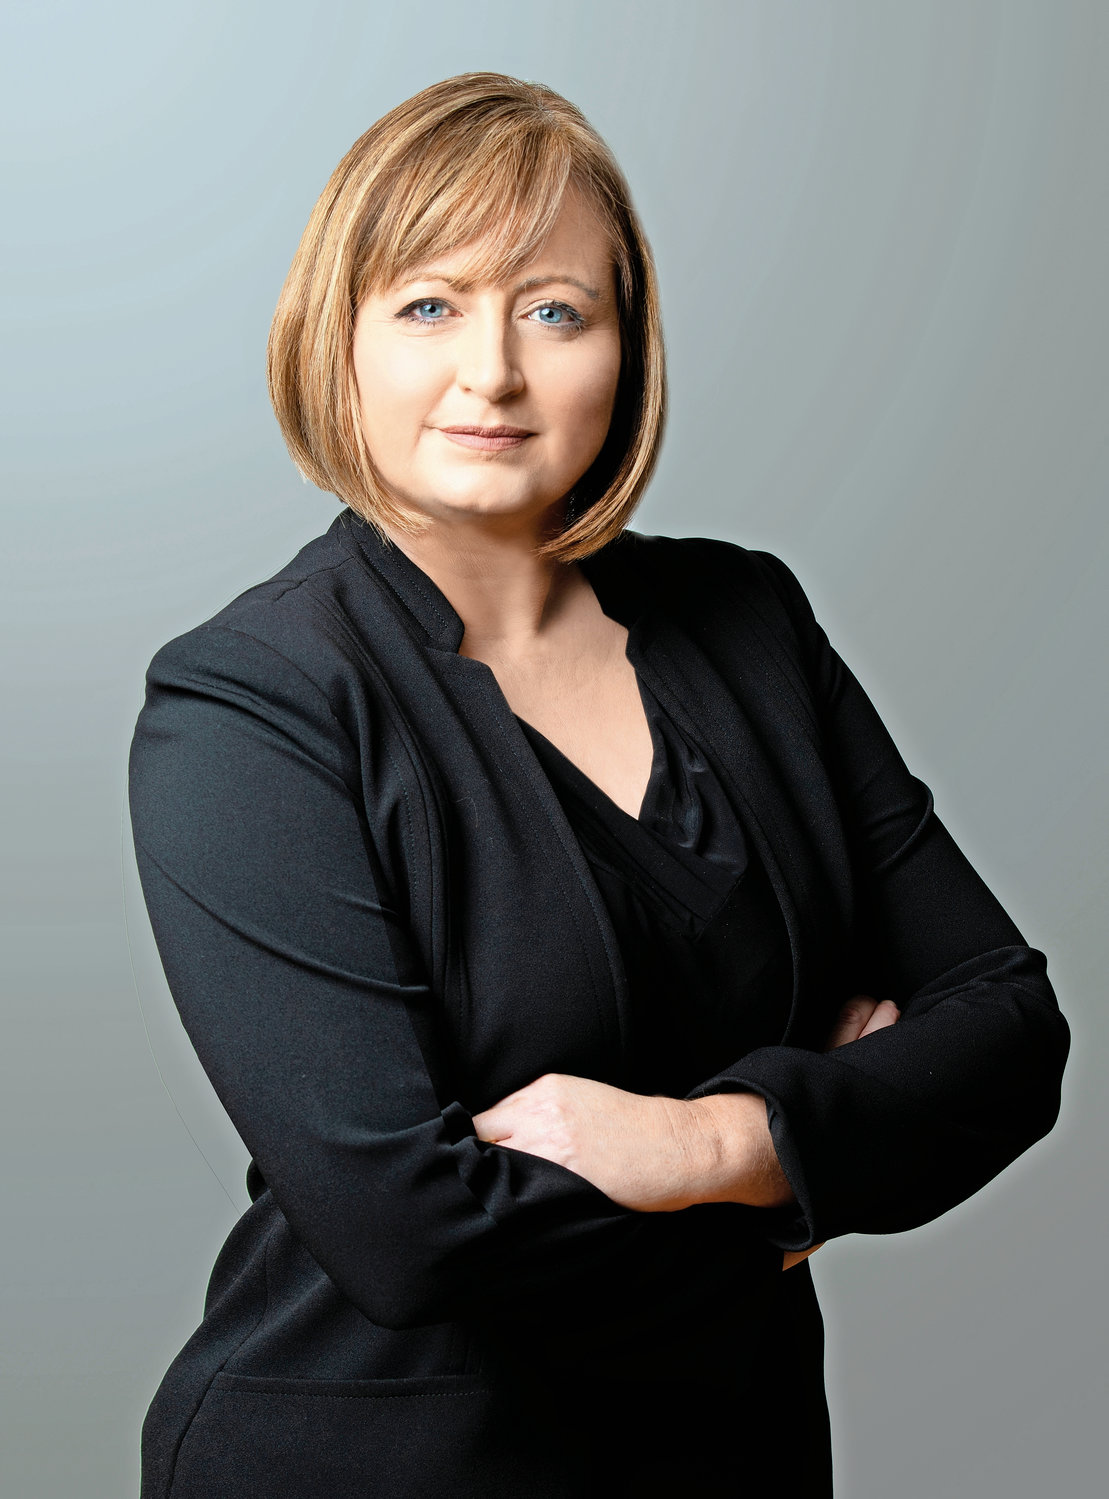 Karen McInnis — Democrat